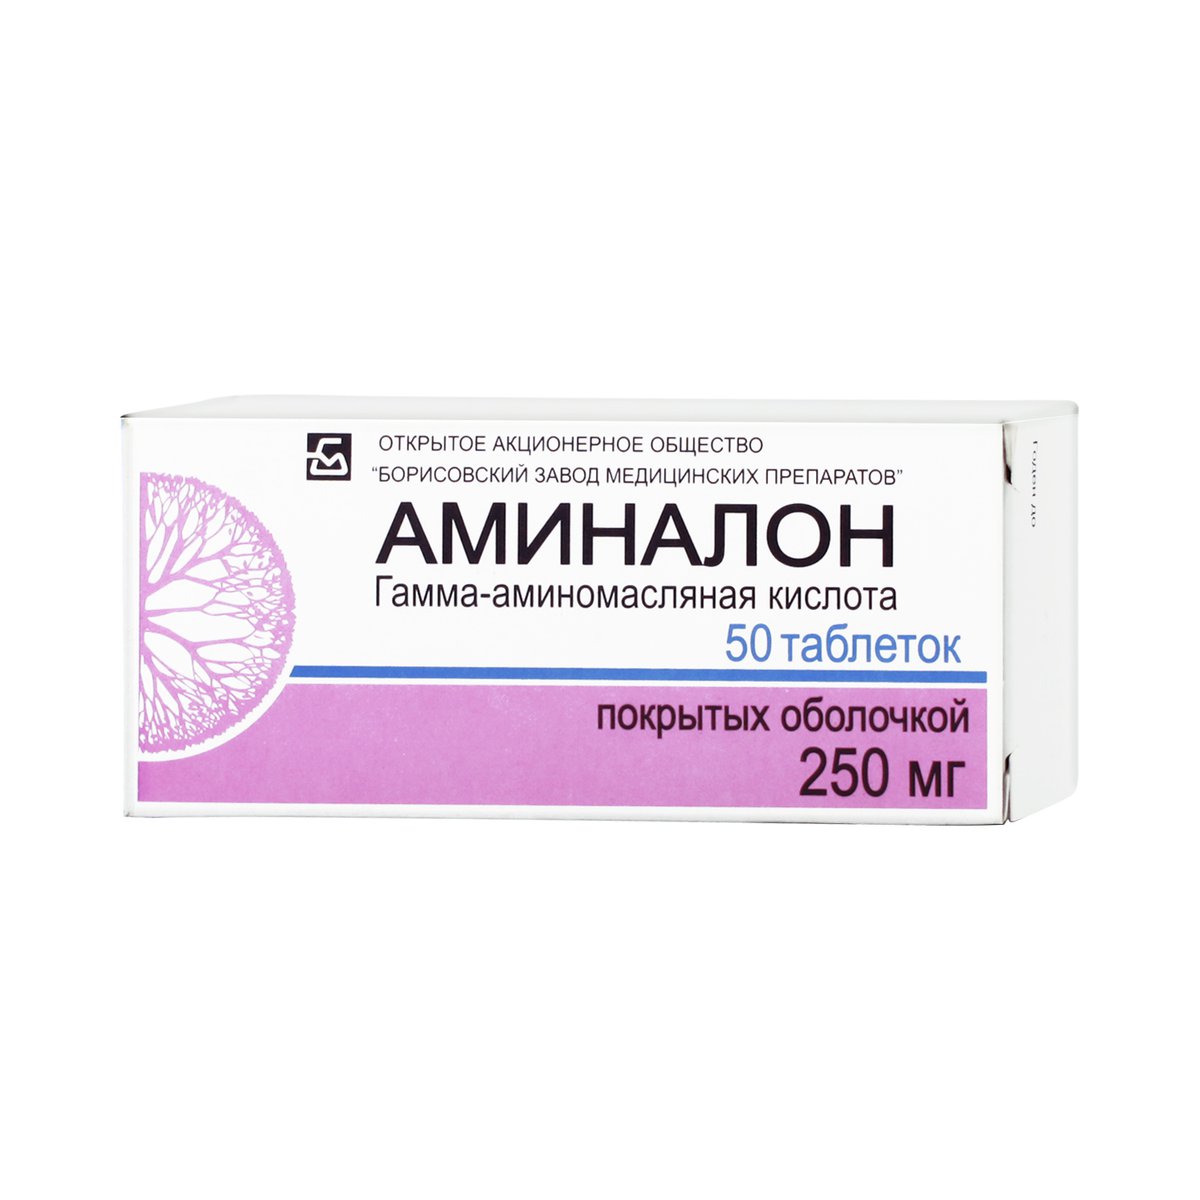 Аминалон (таблетки, 50 шт, 250 мг, для приема внутрь) - цена,  .